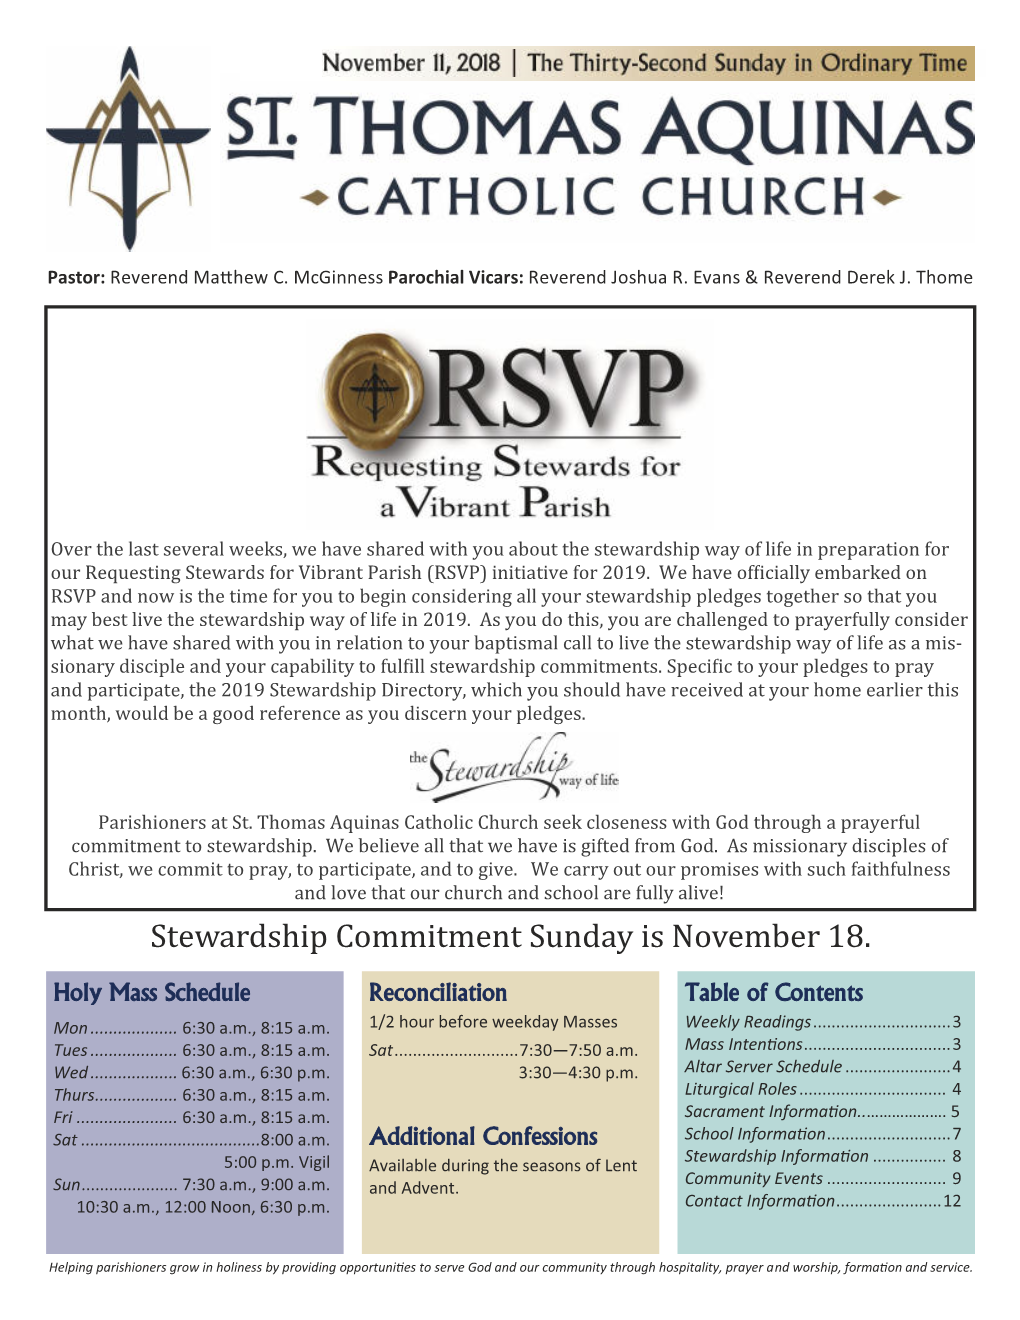 Stewardship Commitment Sunday Is November